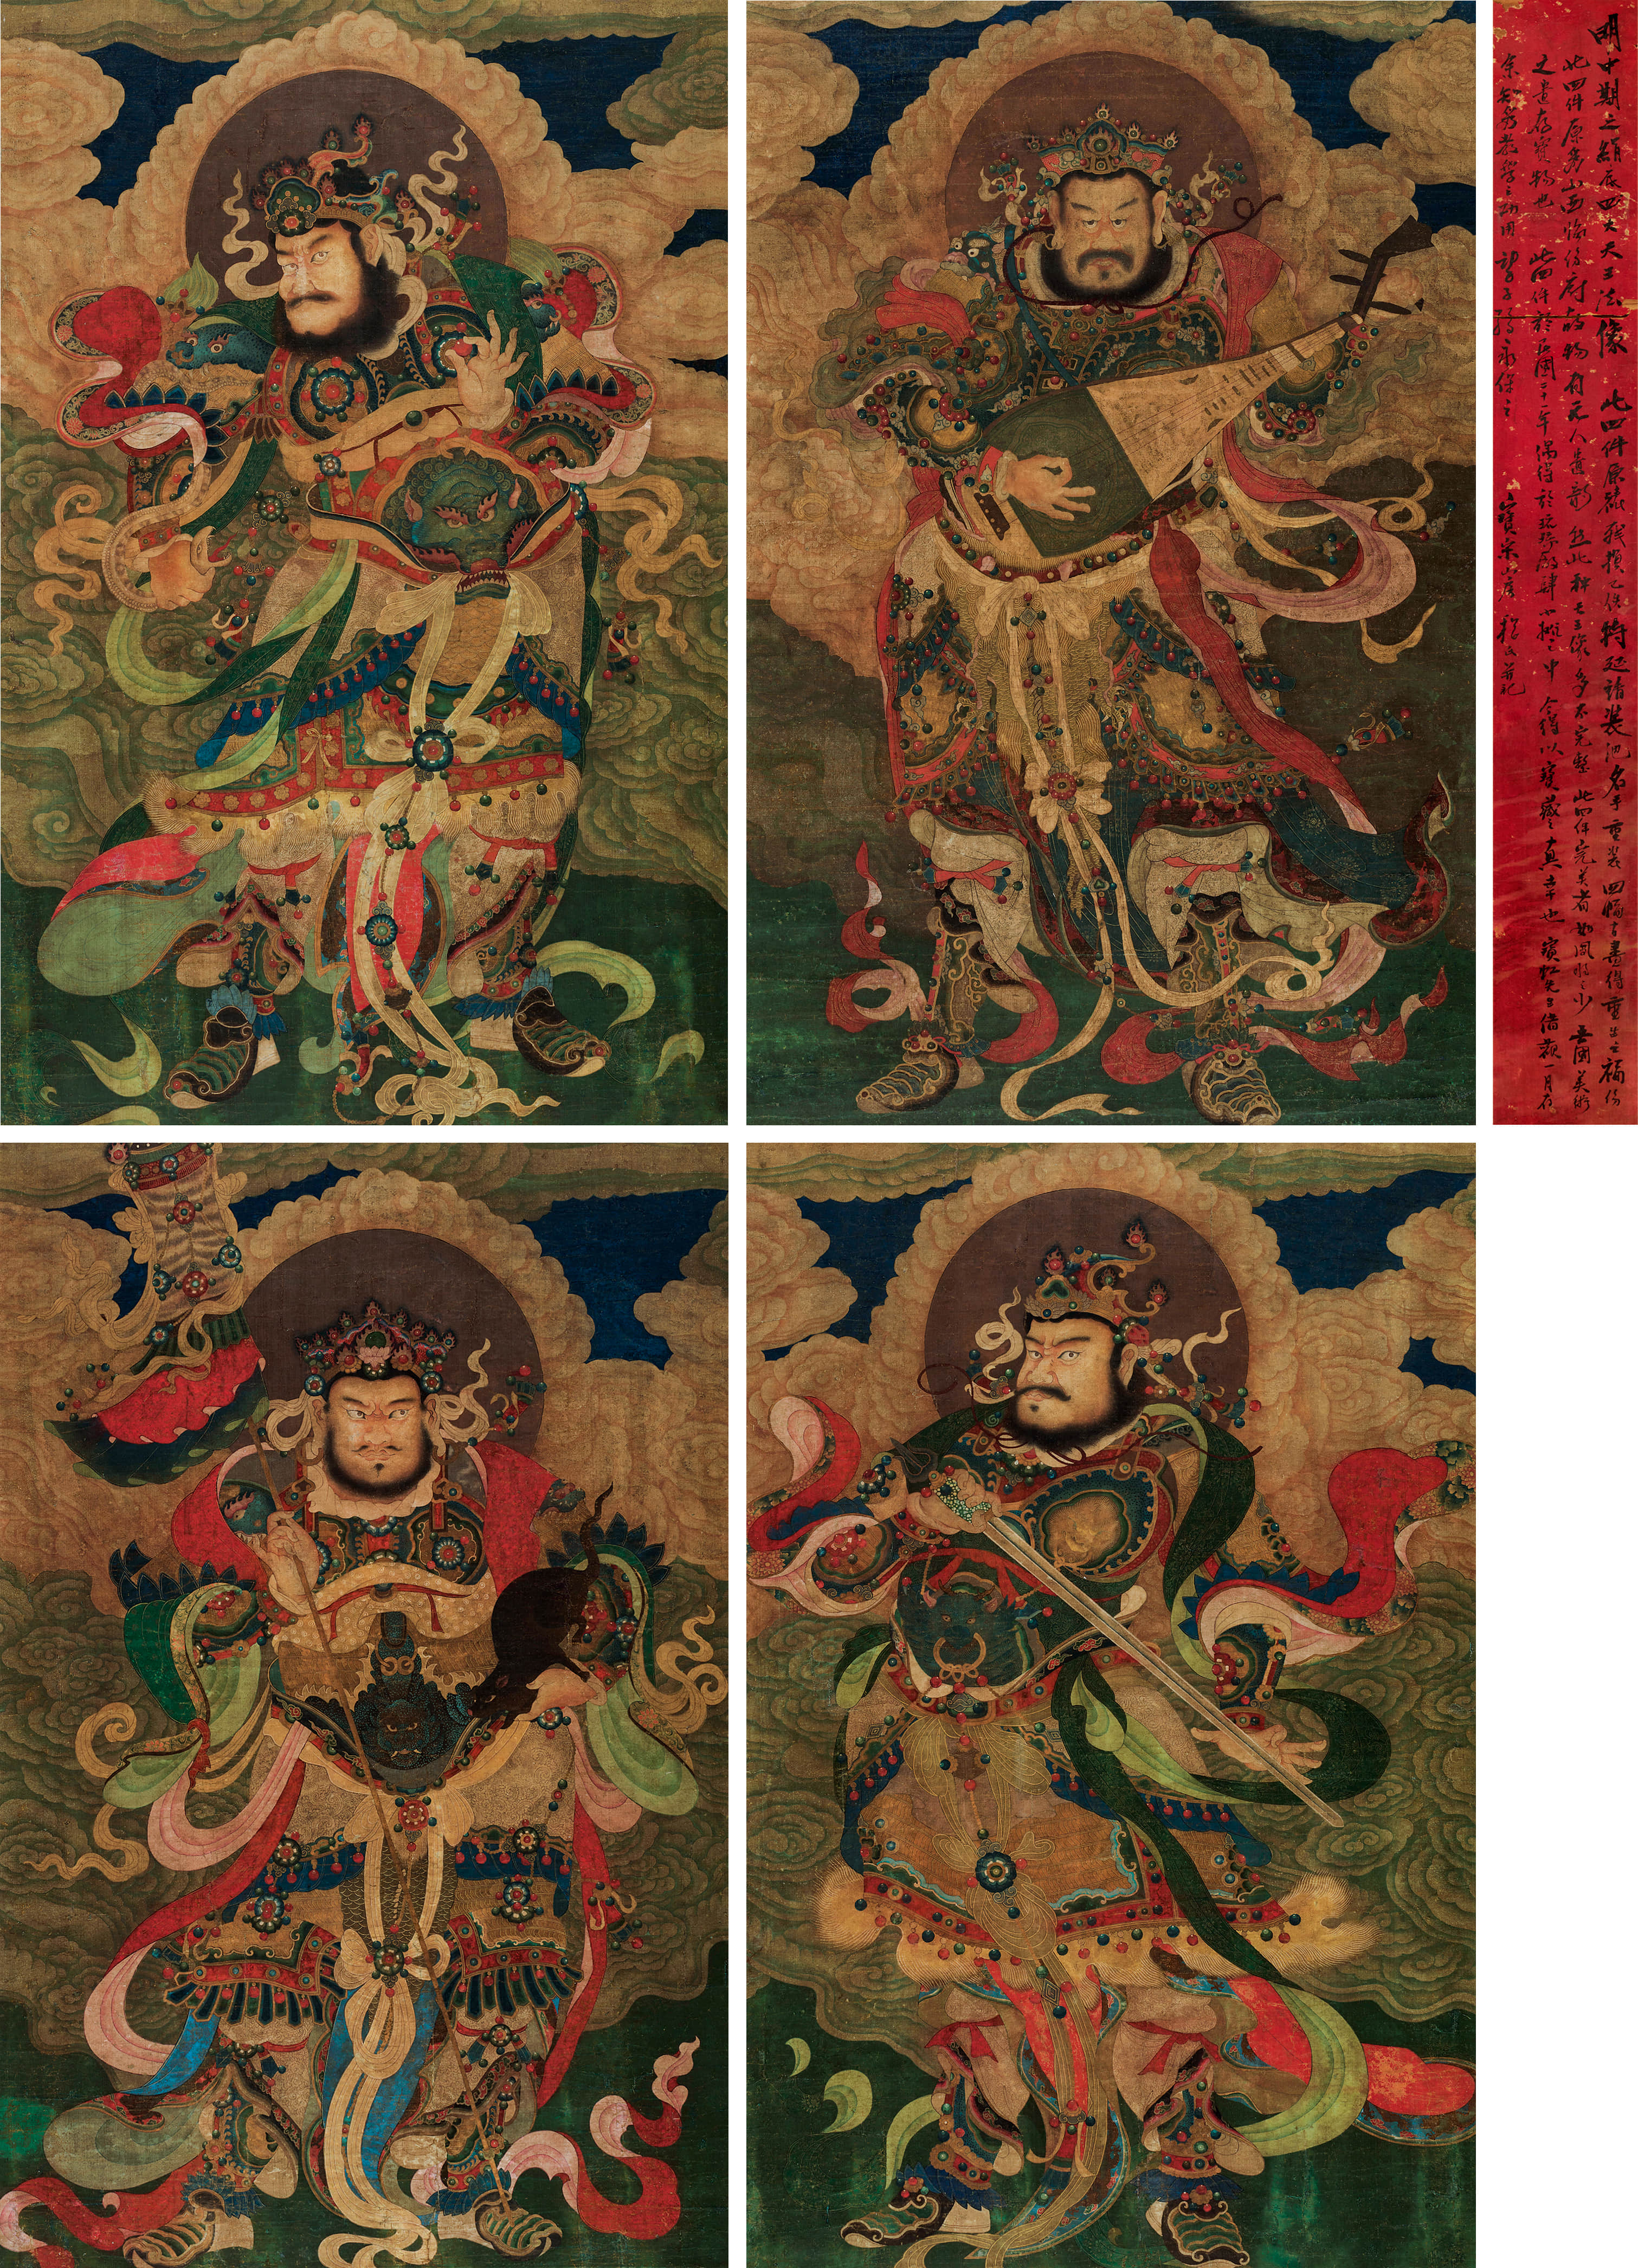 佚名四大天王法像四幅立轴绢本设色